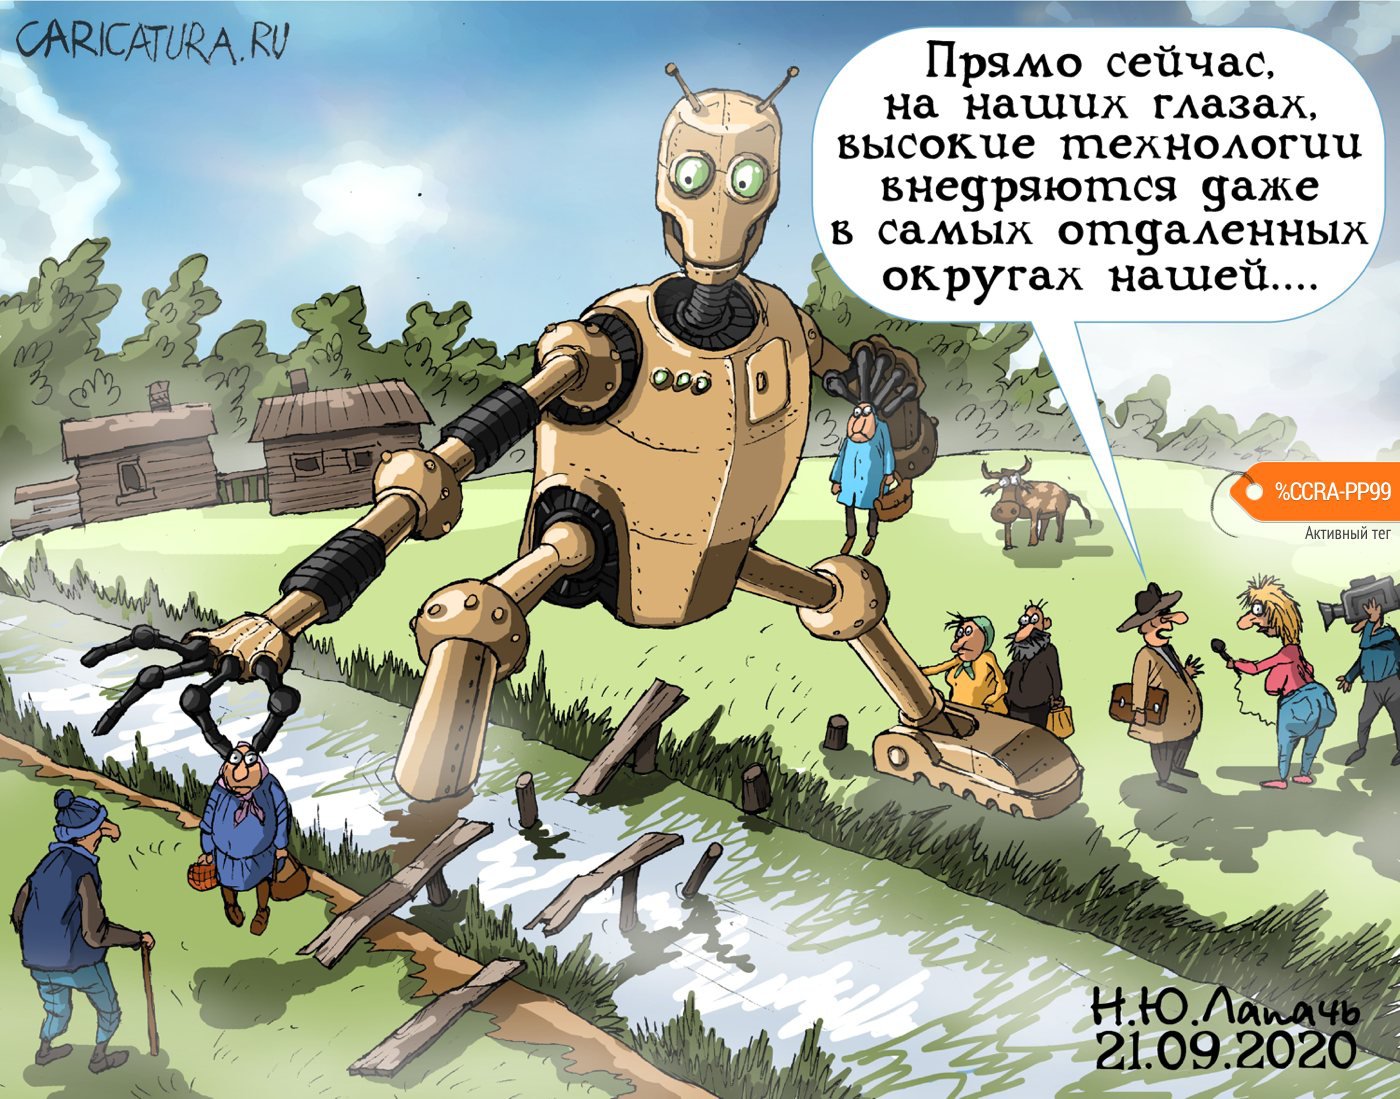 Карикатура "Прорыв", Теплый Телогрей